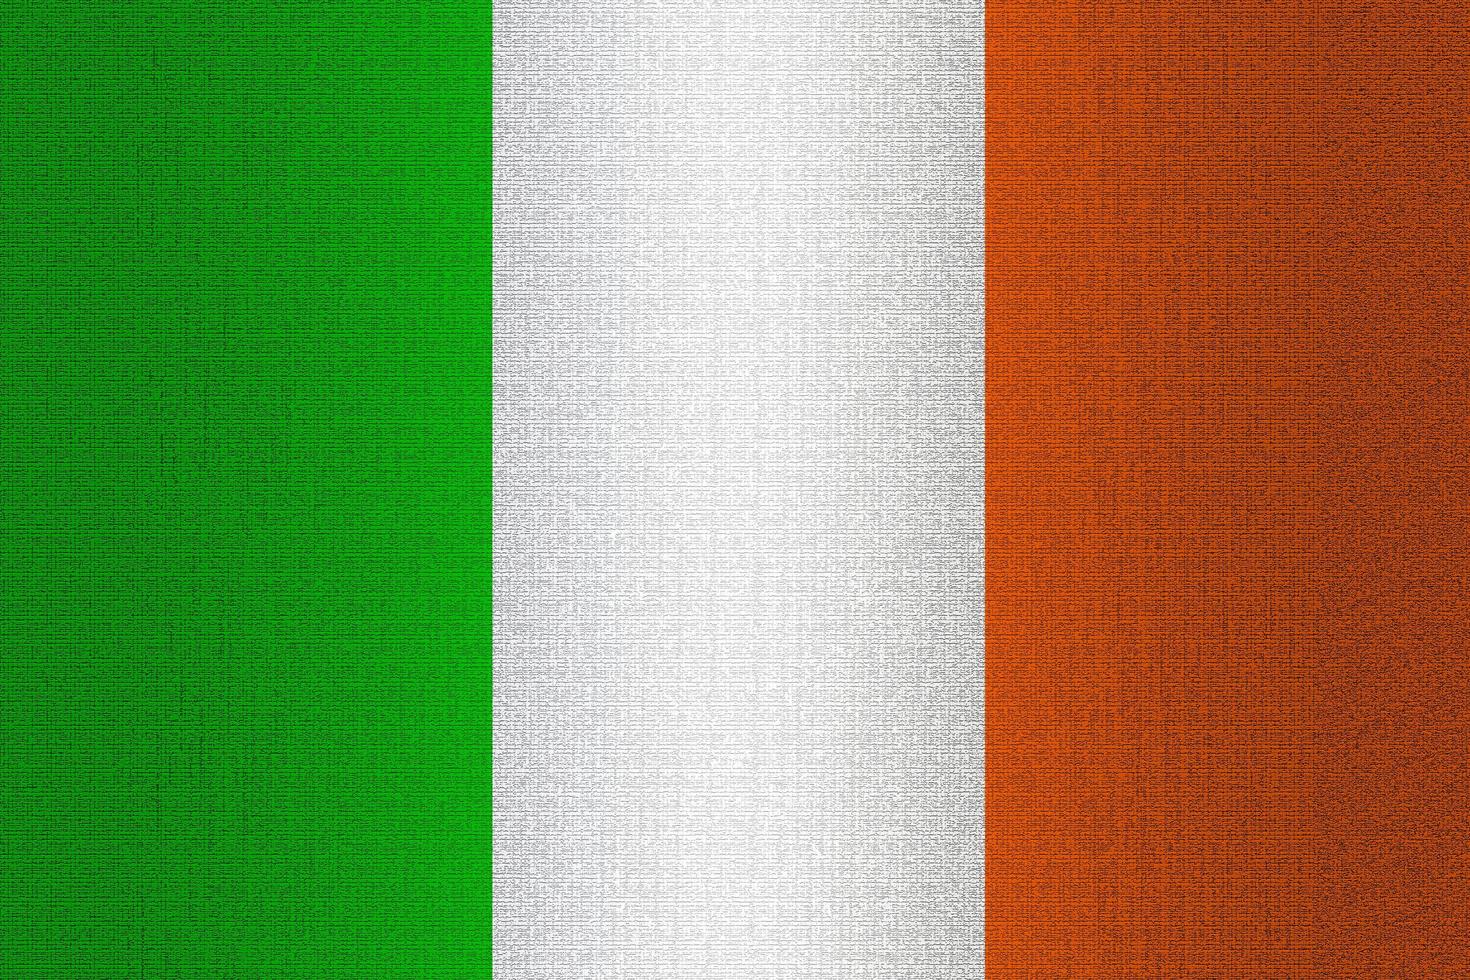 Flag of Ireland on stone photo